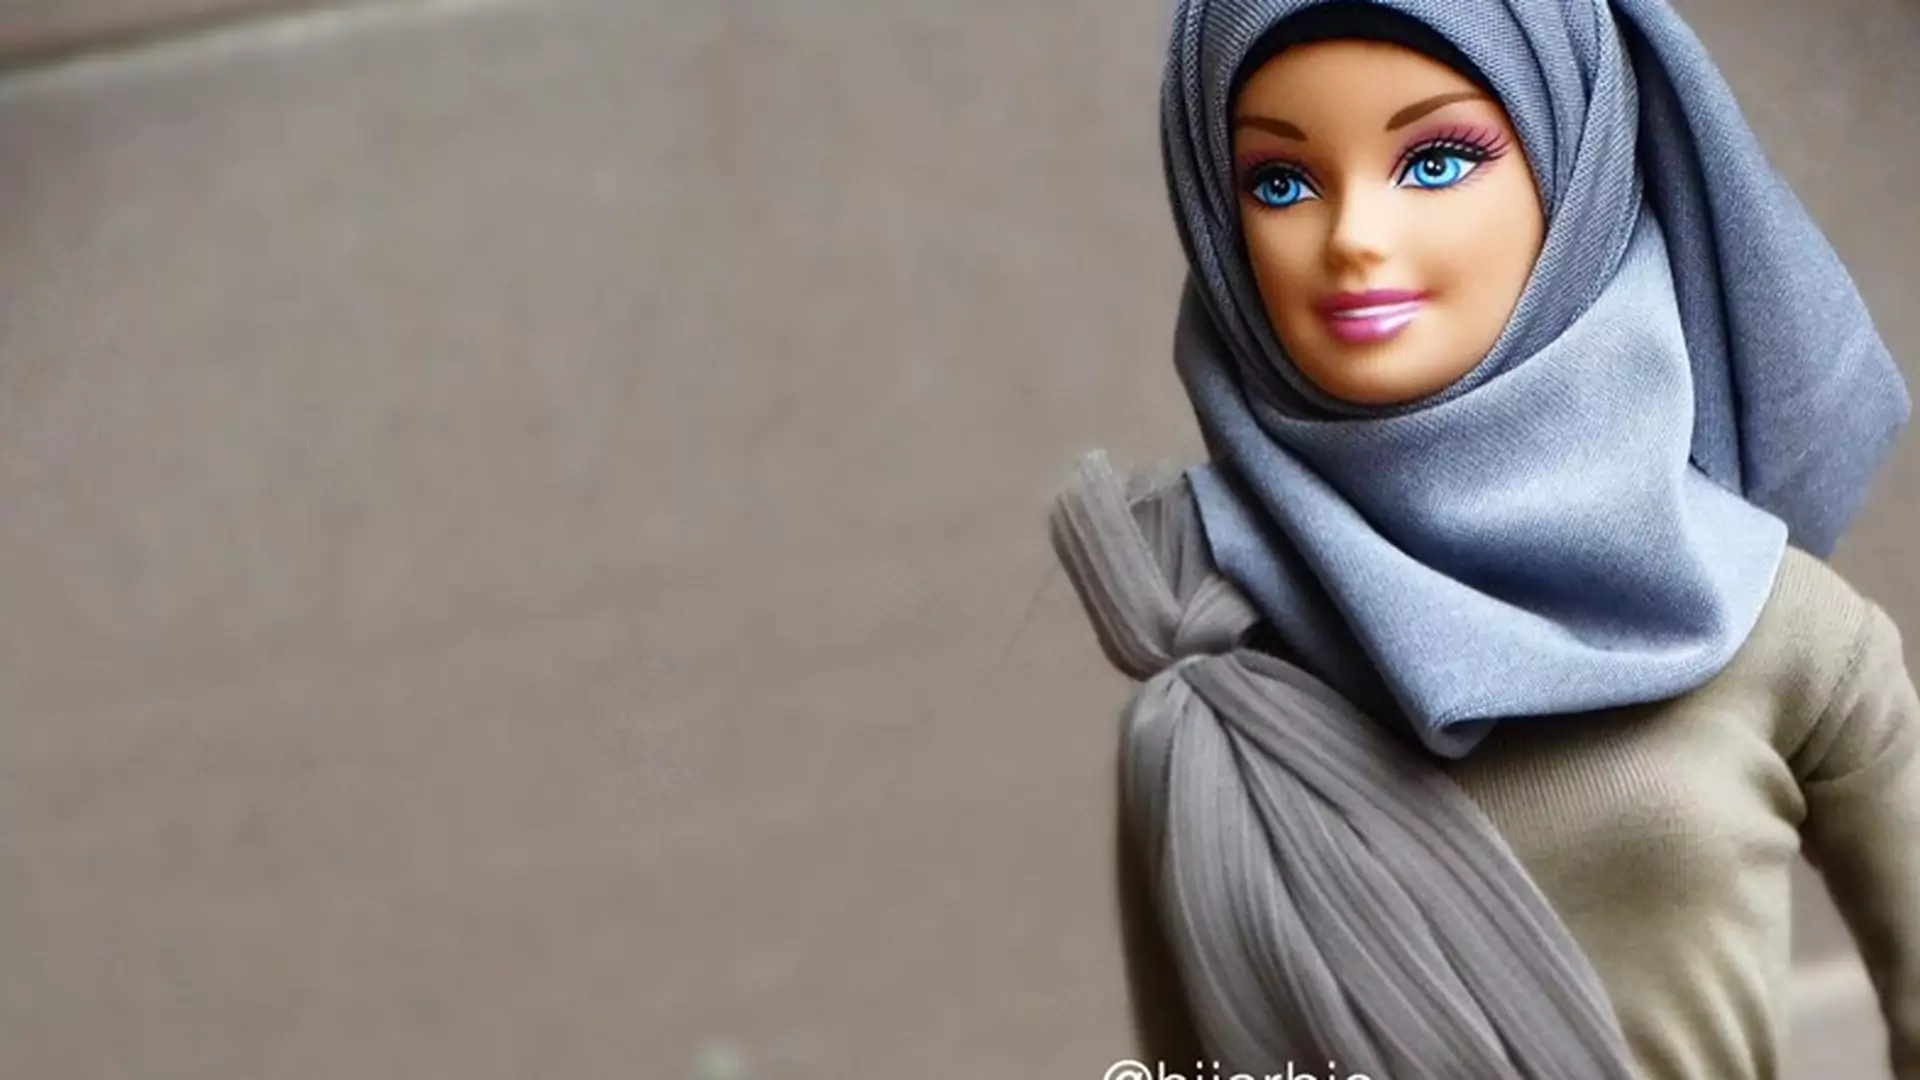 Poznajcie Hijarbie. To pierwsza lalka w stroju muzułmanki